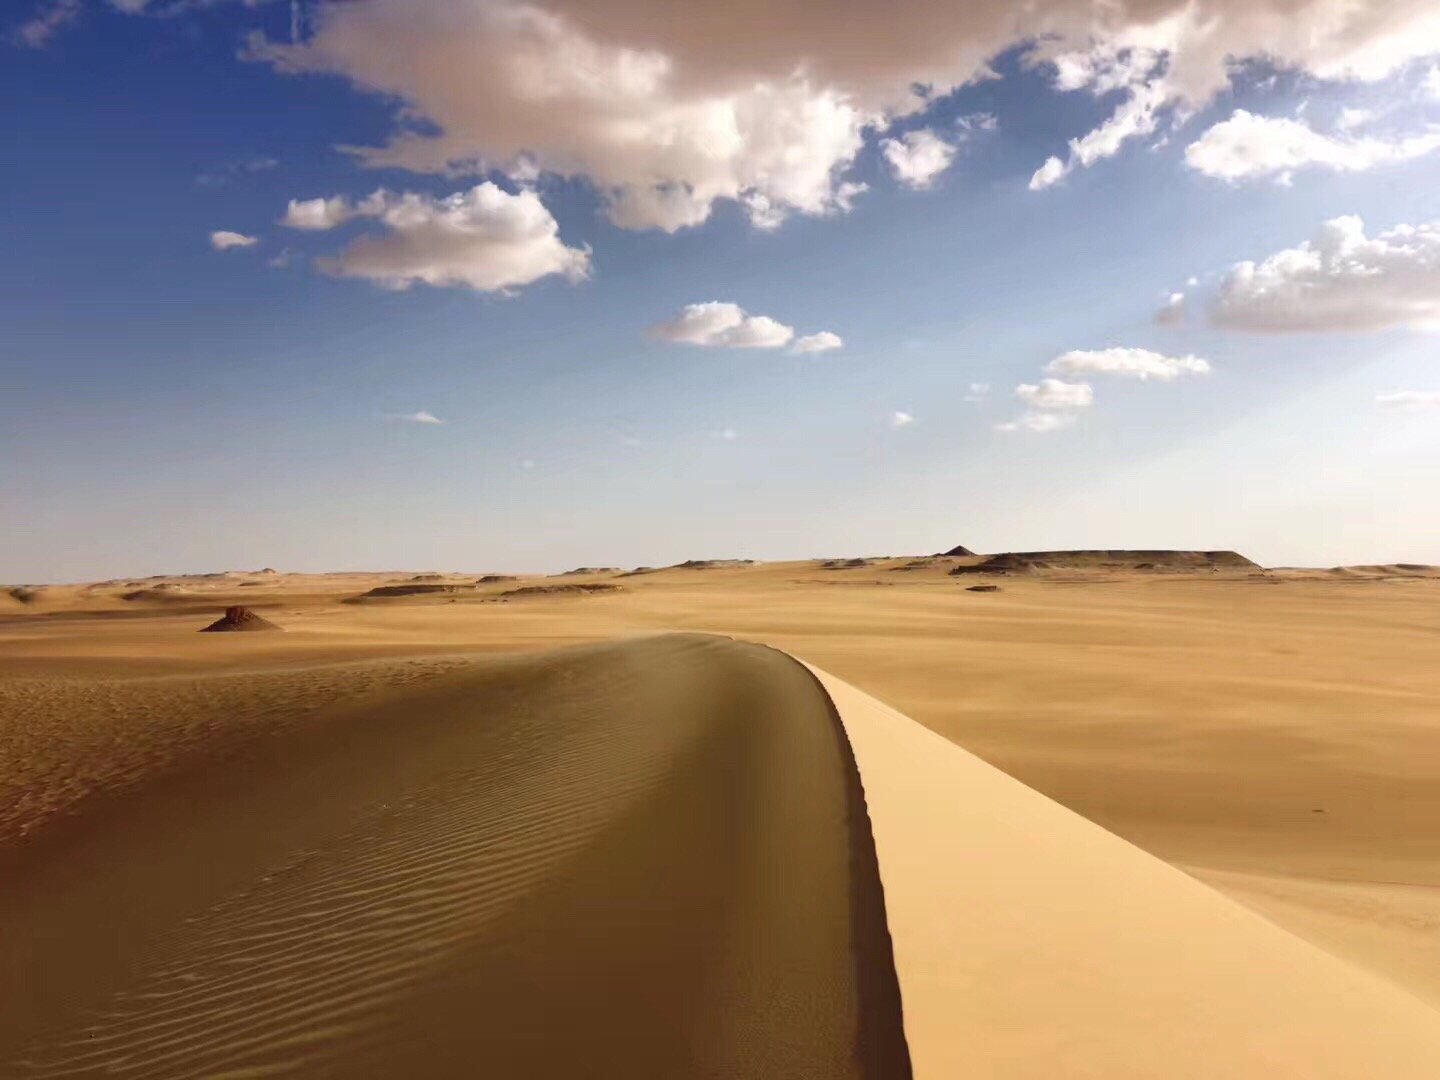 埃及｜锡瓦｜撒哈拉沙漠。 位于埃及西部的沙漠地区，距离锡瓦古城开车大概2小时左右。  交通：每周有三